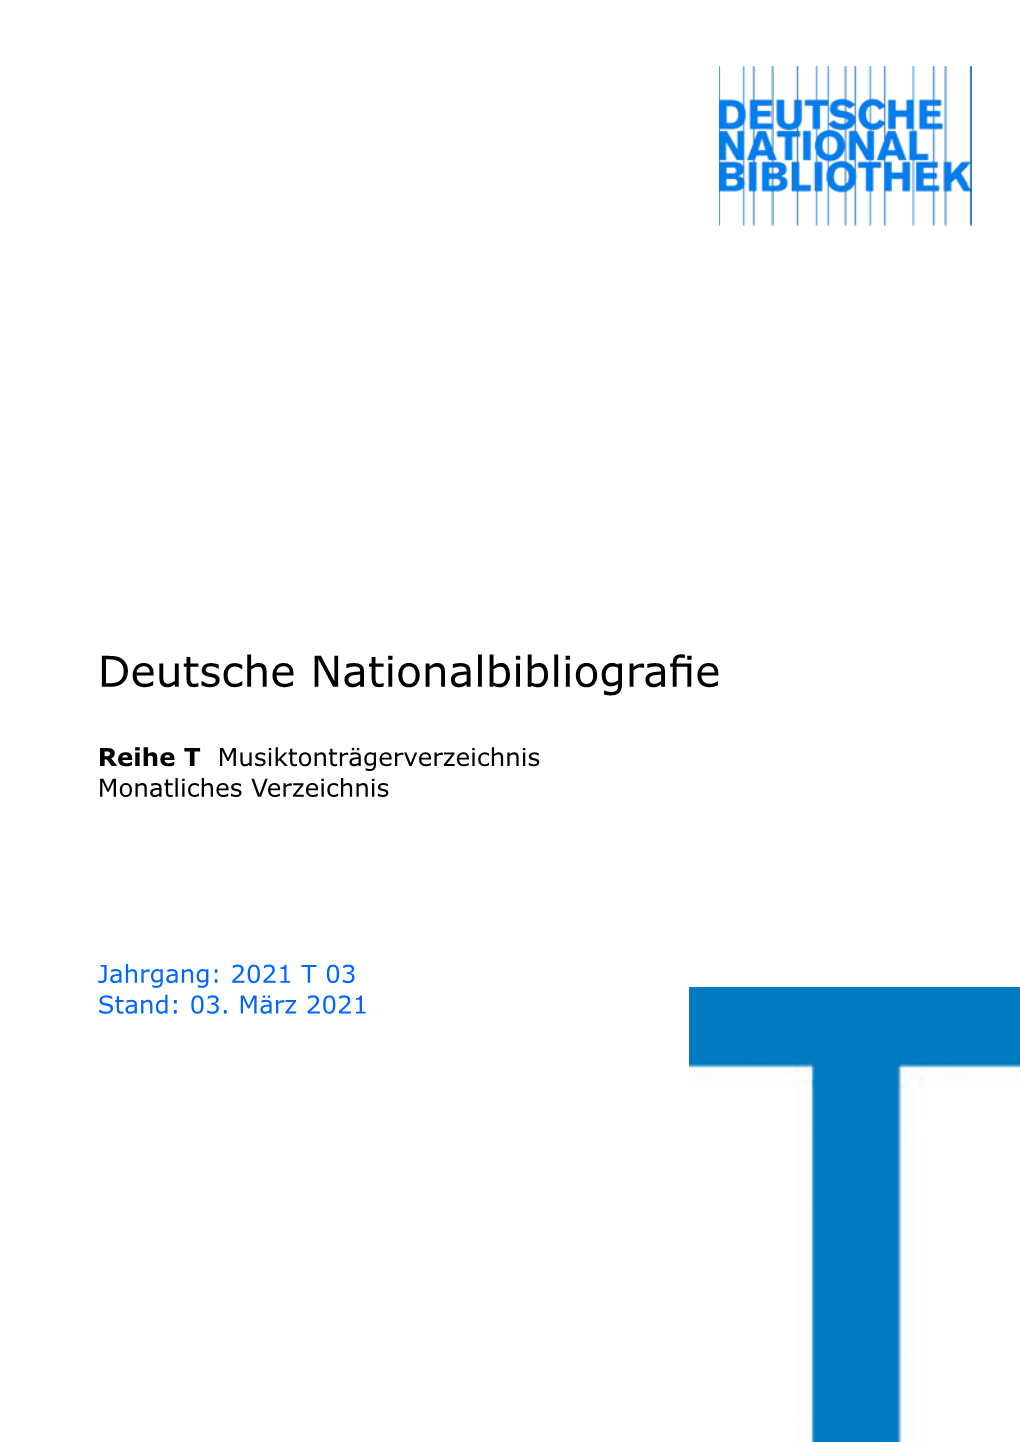 Deutsche Nationalbibliografie 2021 T 03